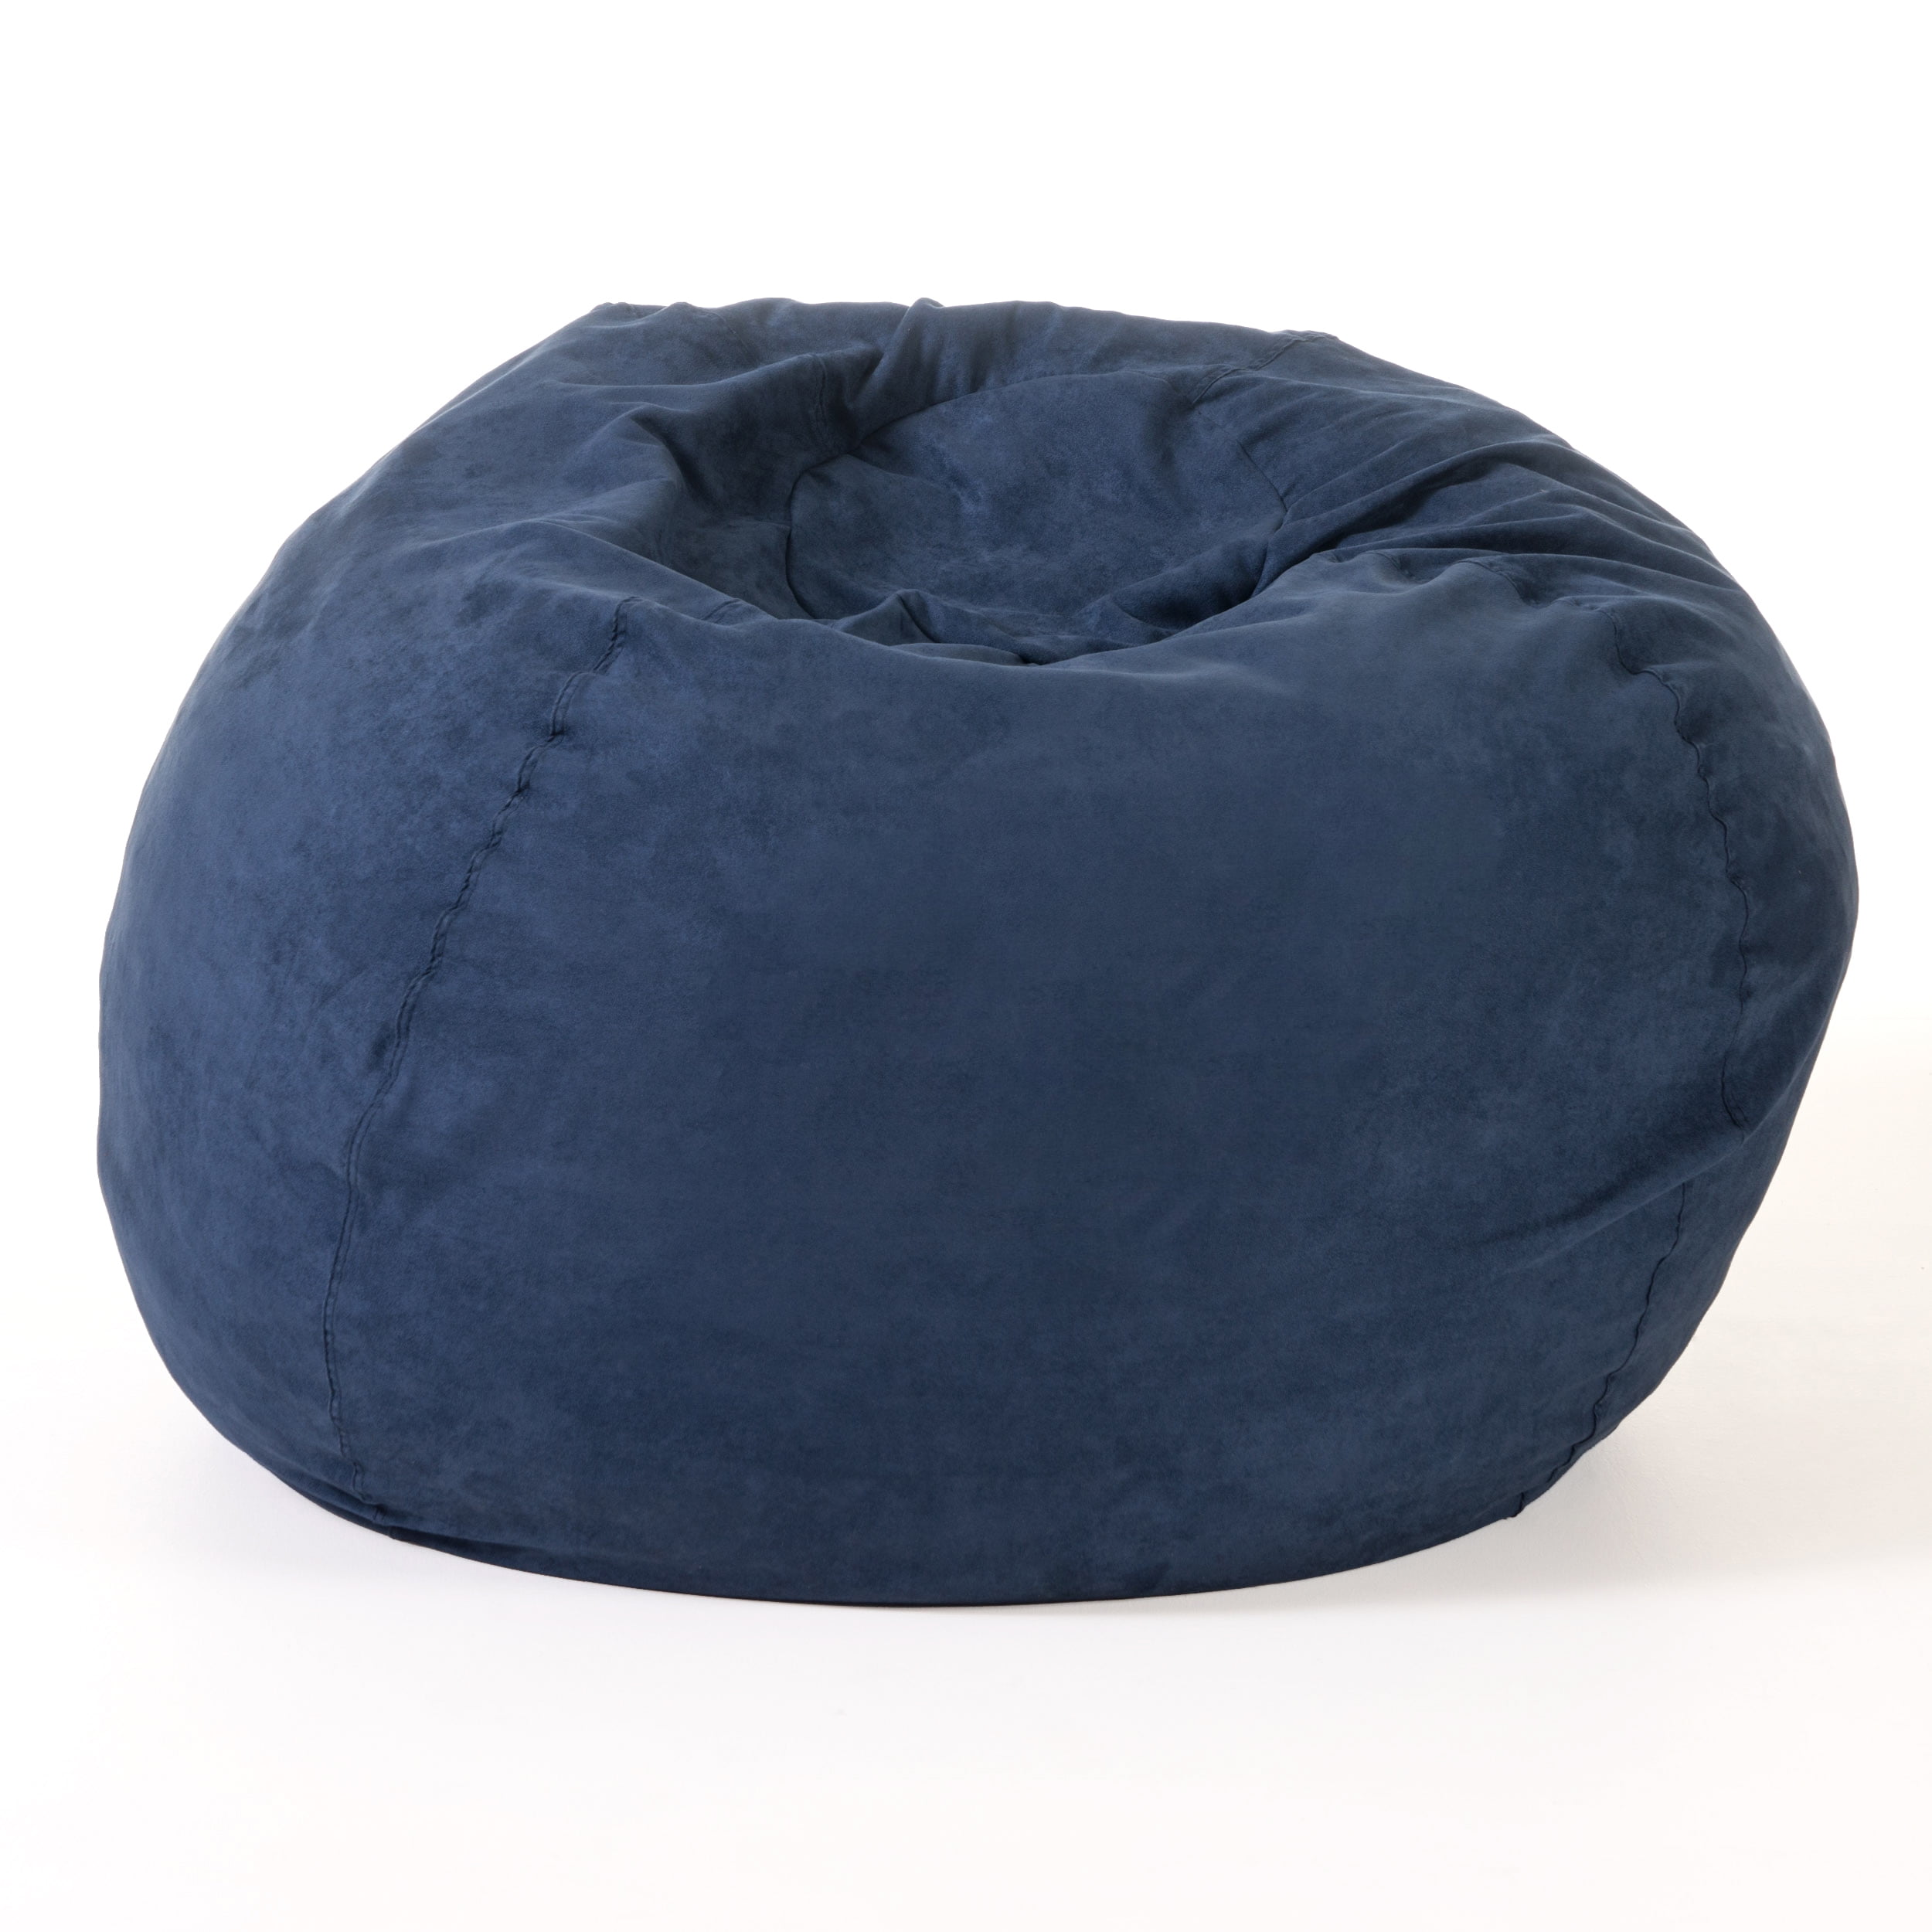 54" Teal Blue Solid Contemporary Bean Bag Chair Walmart